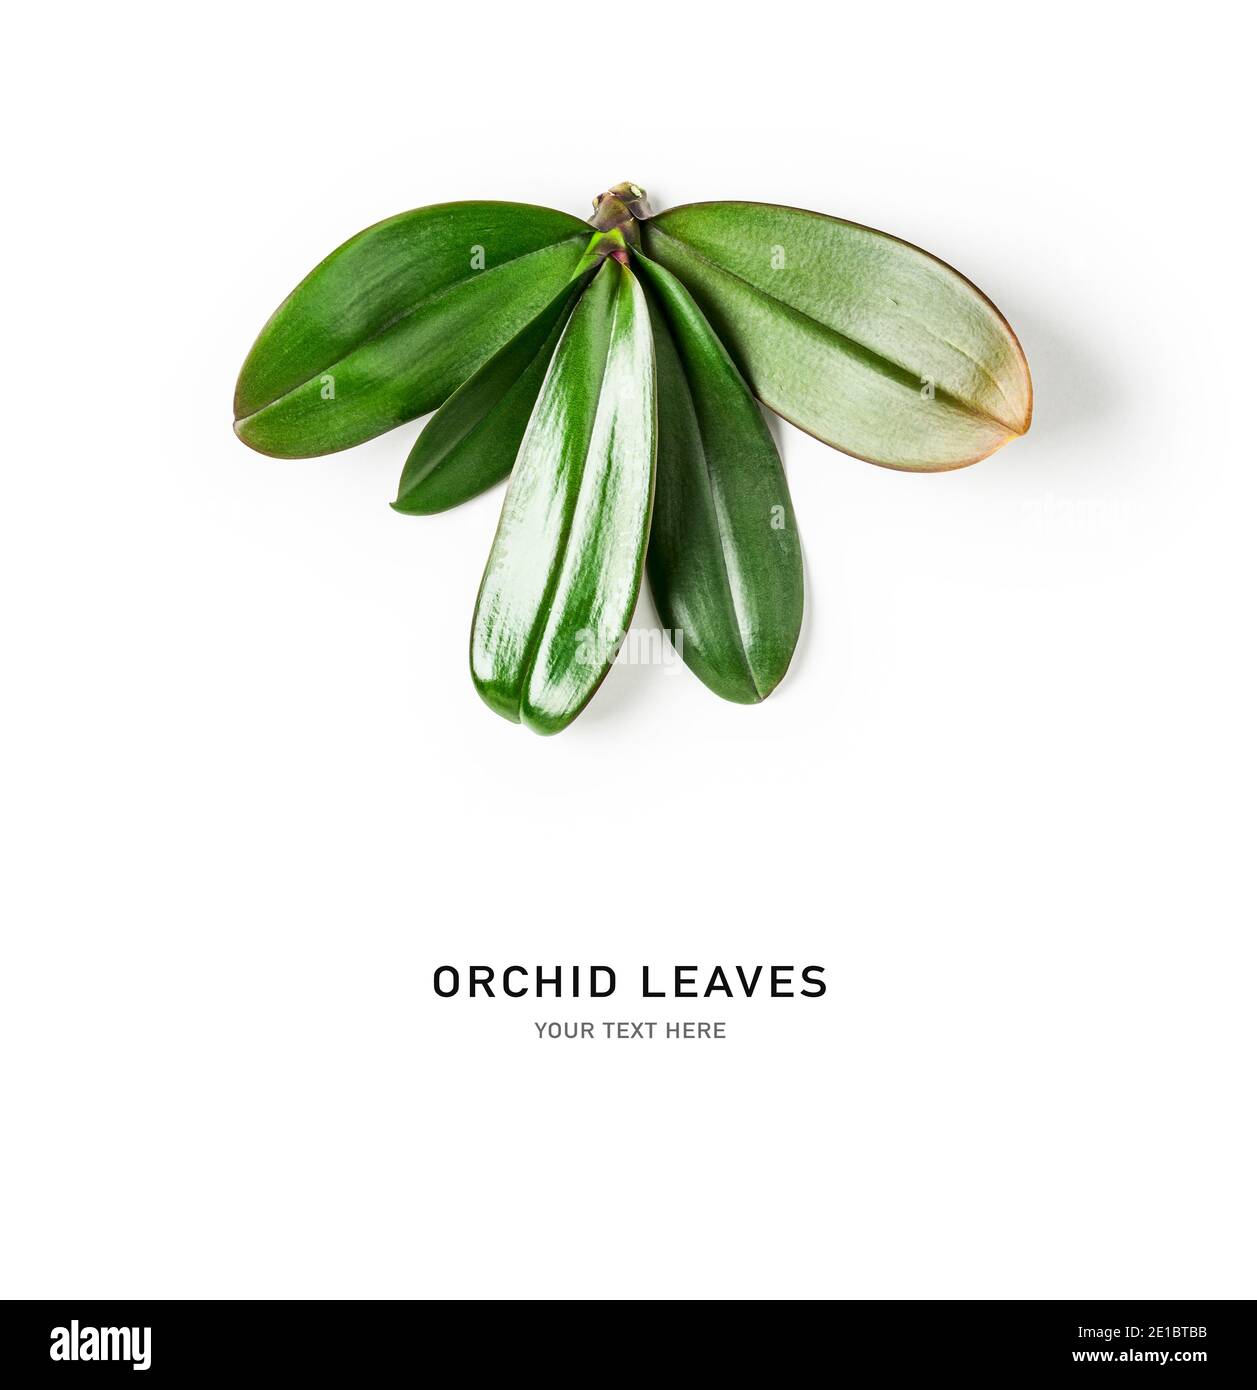 Orchid laisse la composition créative et la disposition isolée sur fond blanc. Arrangement floral avec des feuilles de vert jungle tropical. Nature et environnement Banque D'Images